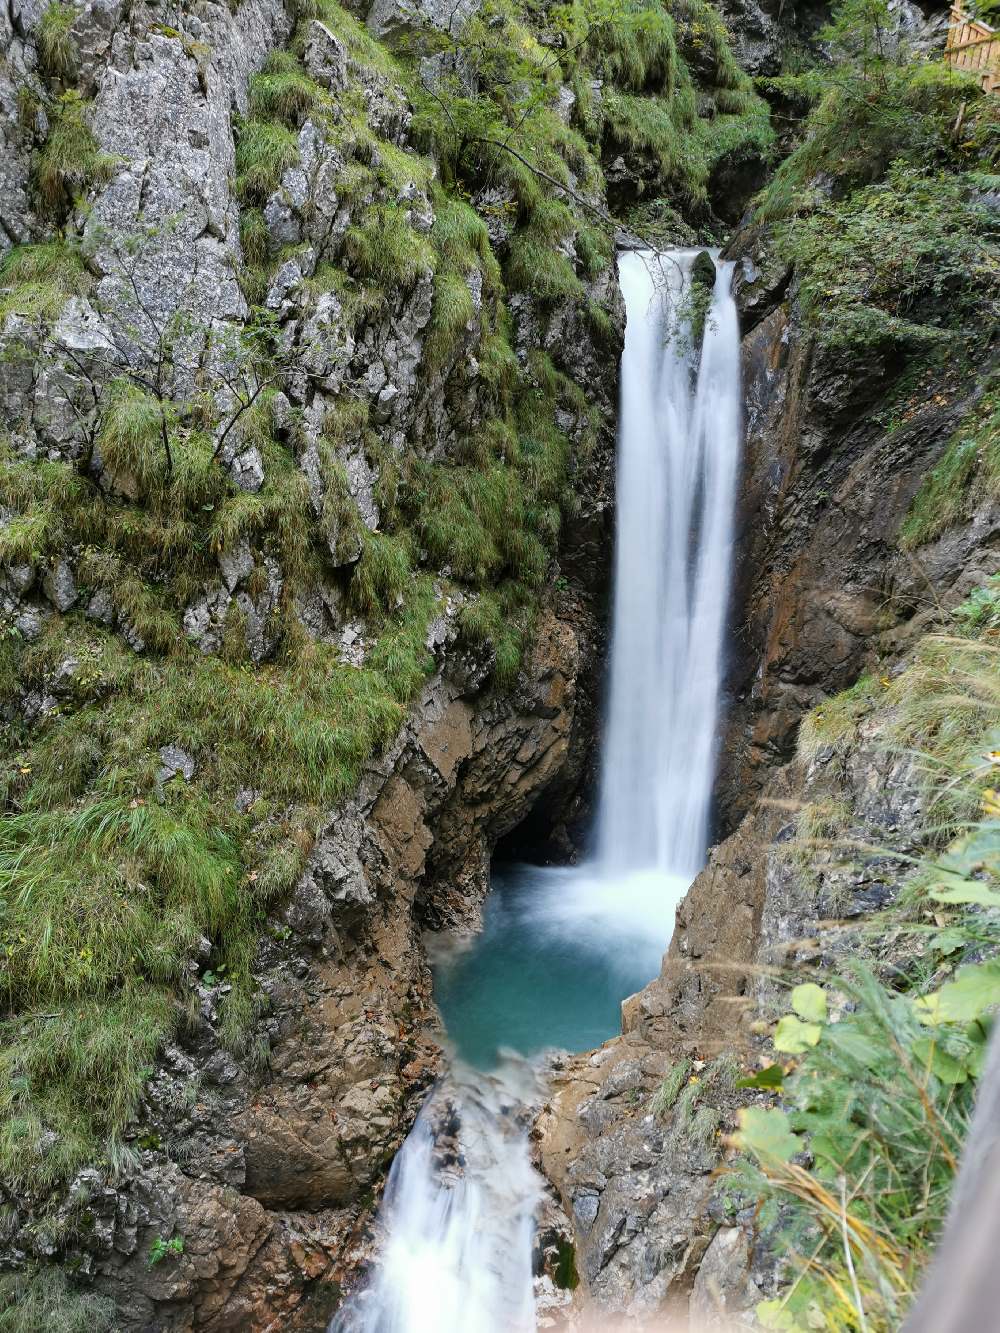 Watervallen Tirol: De watervallen in de Wolfsklamm Oostenrijk zijn metershoog